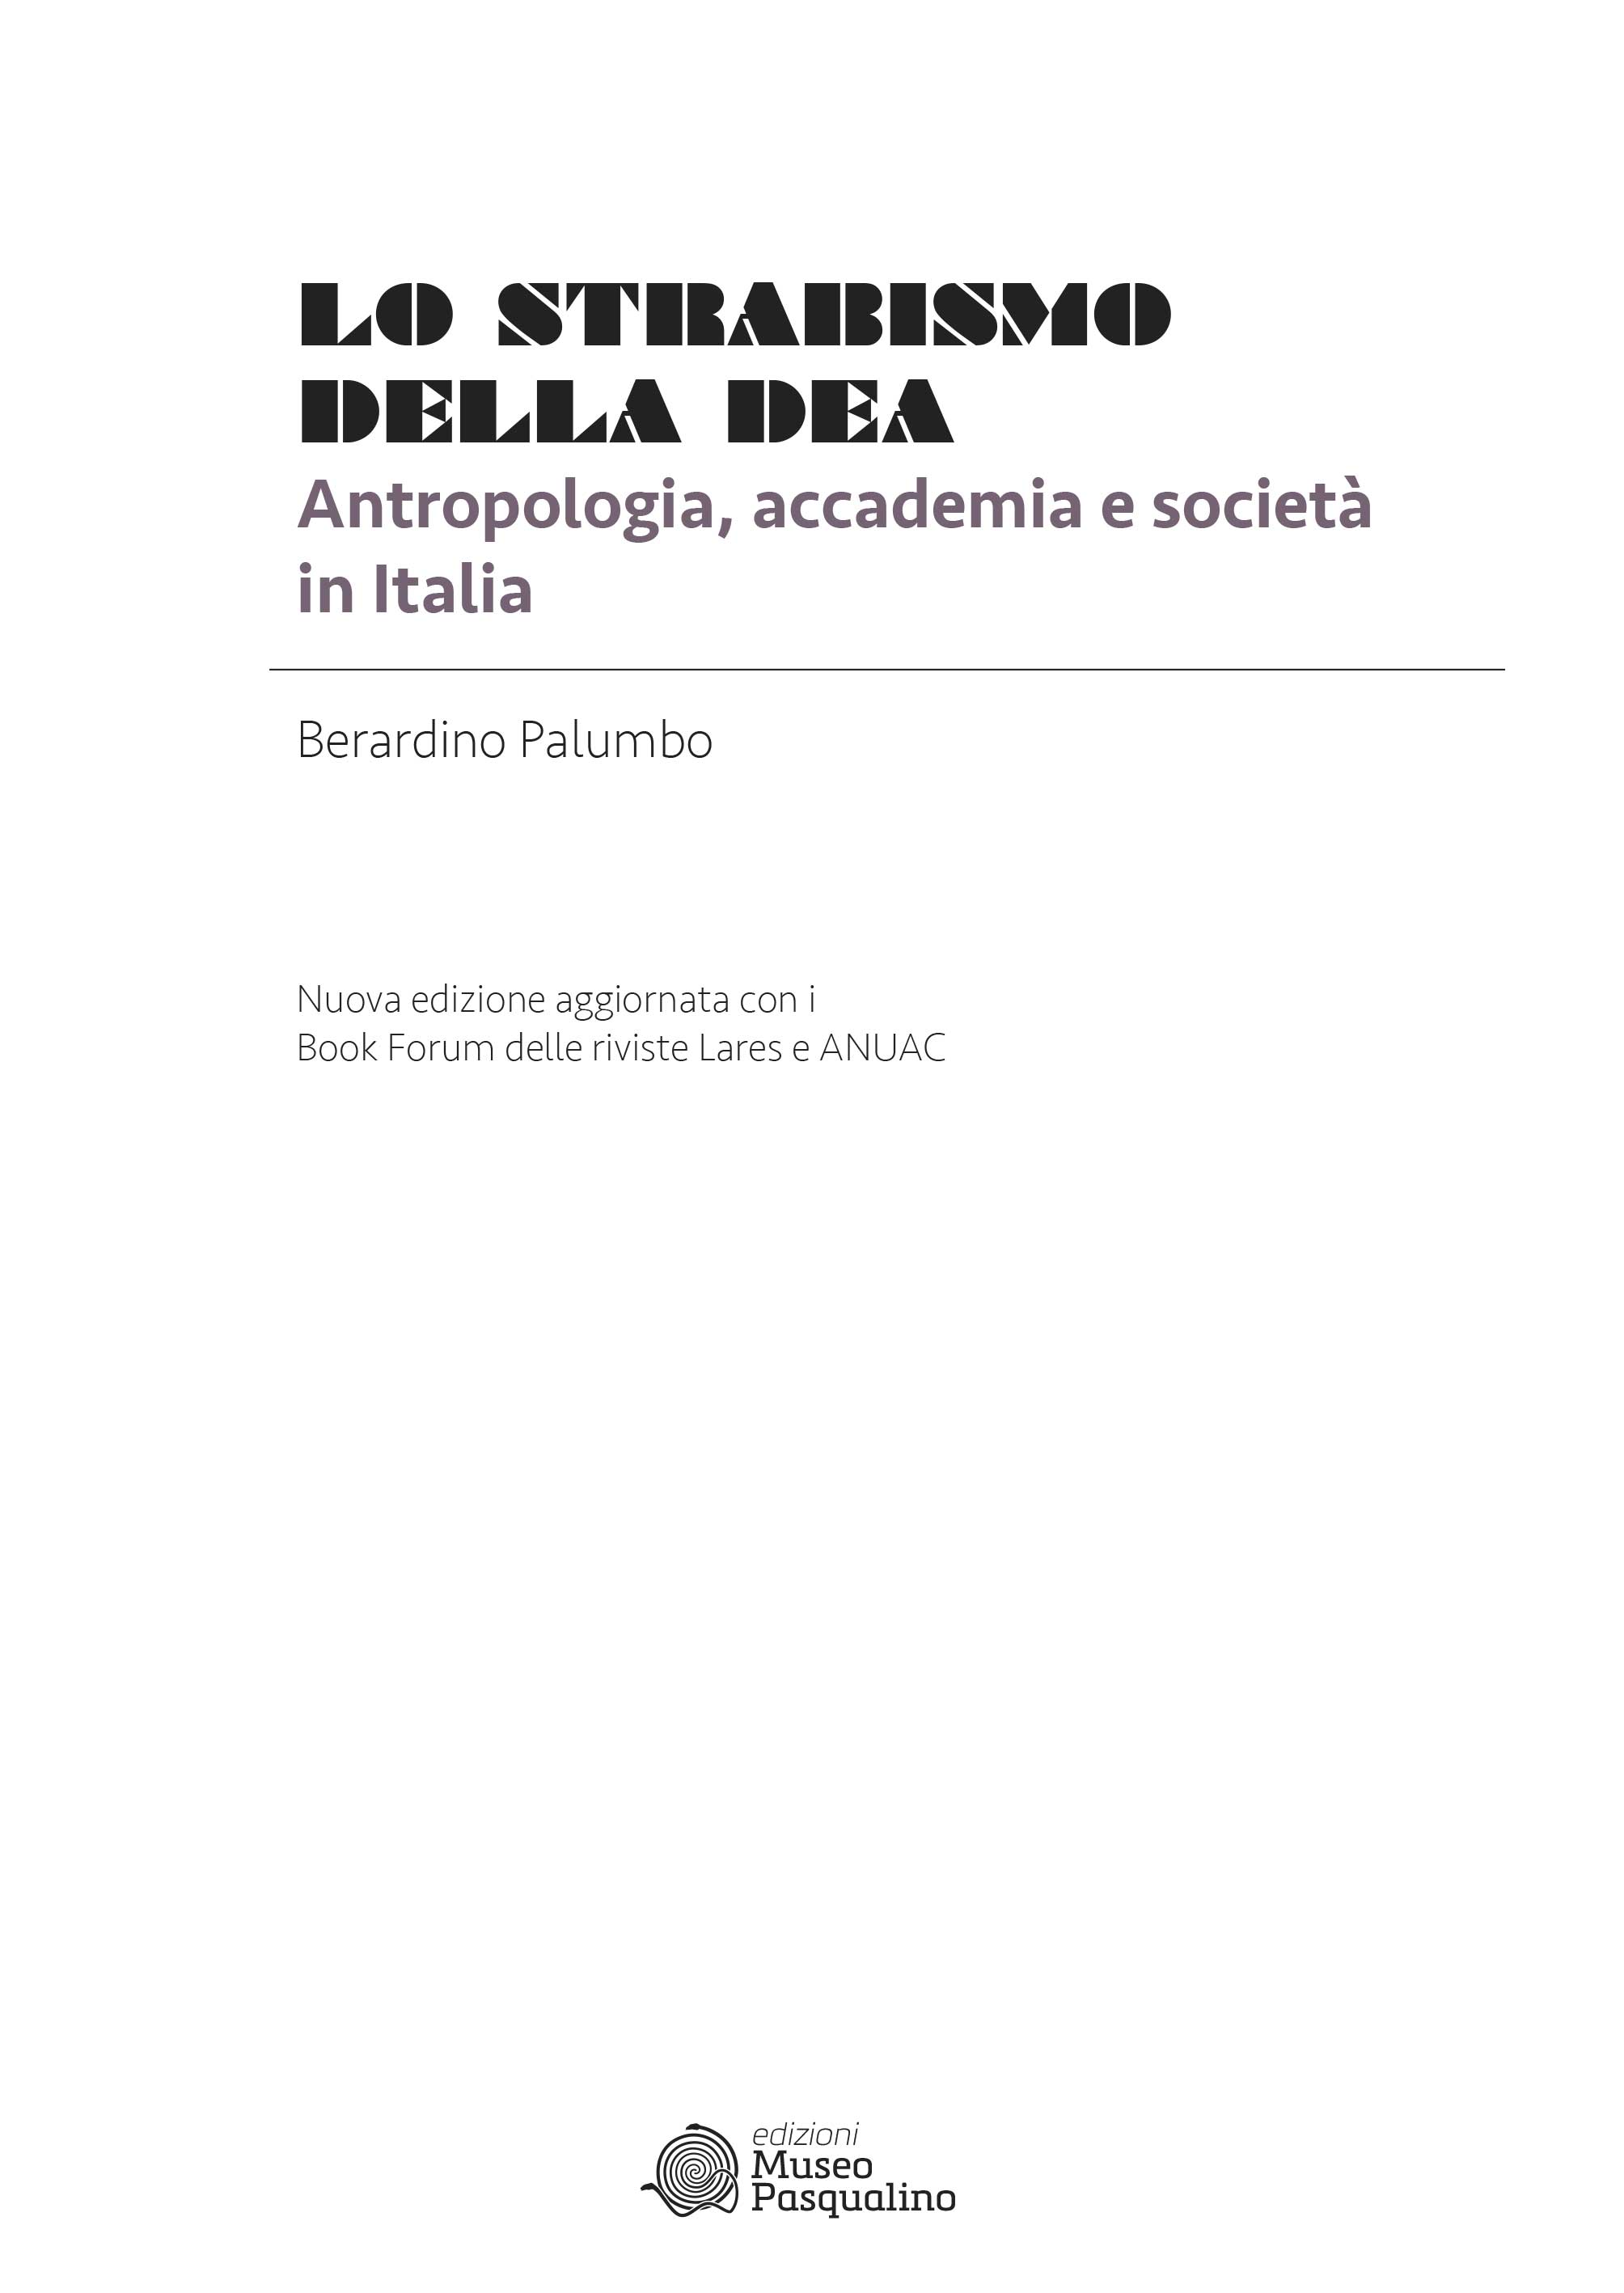 Antropologia culturale Seconda Edizione (Italian Edition)